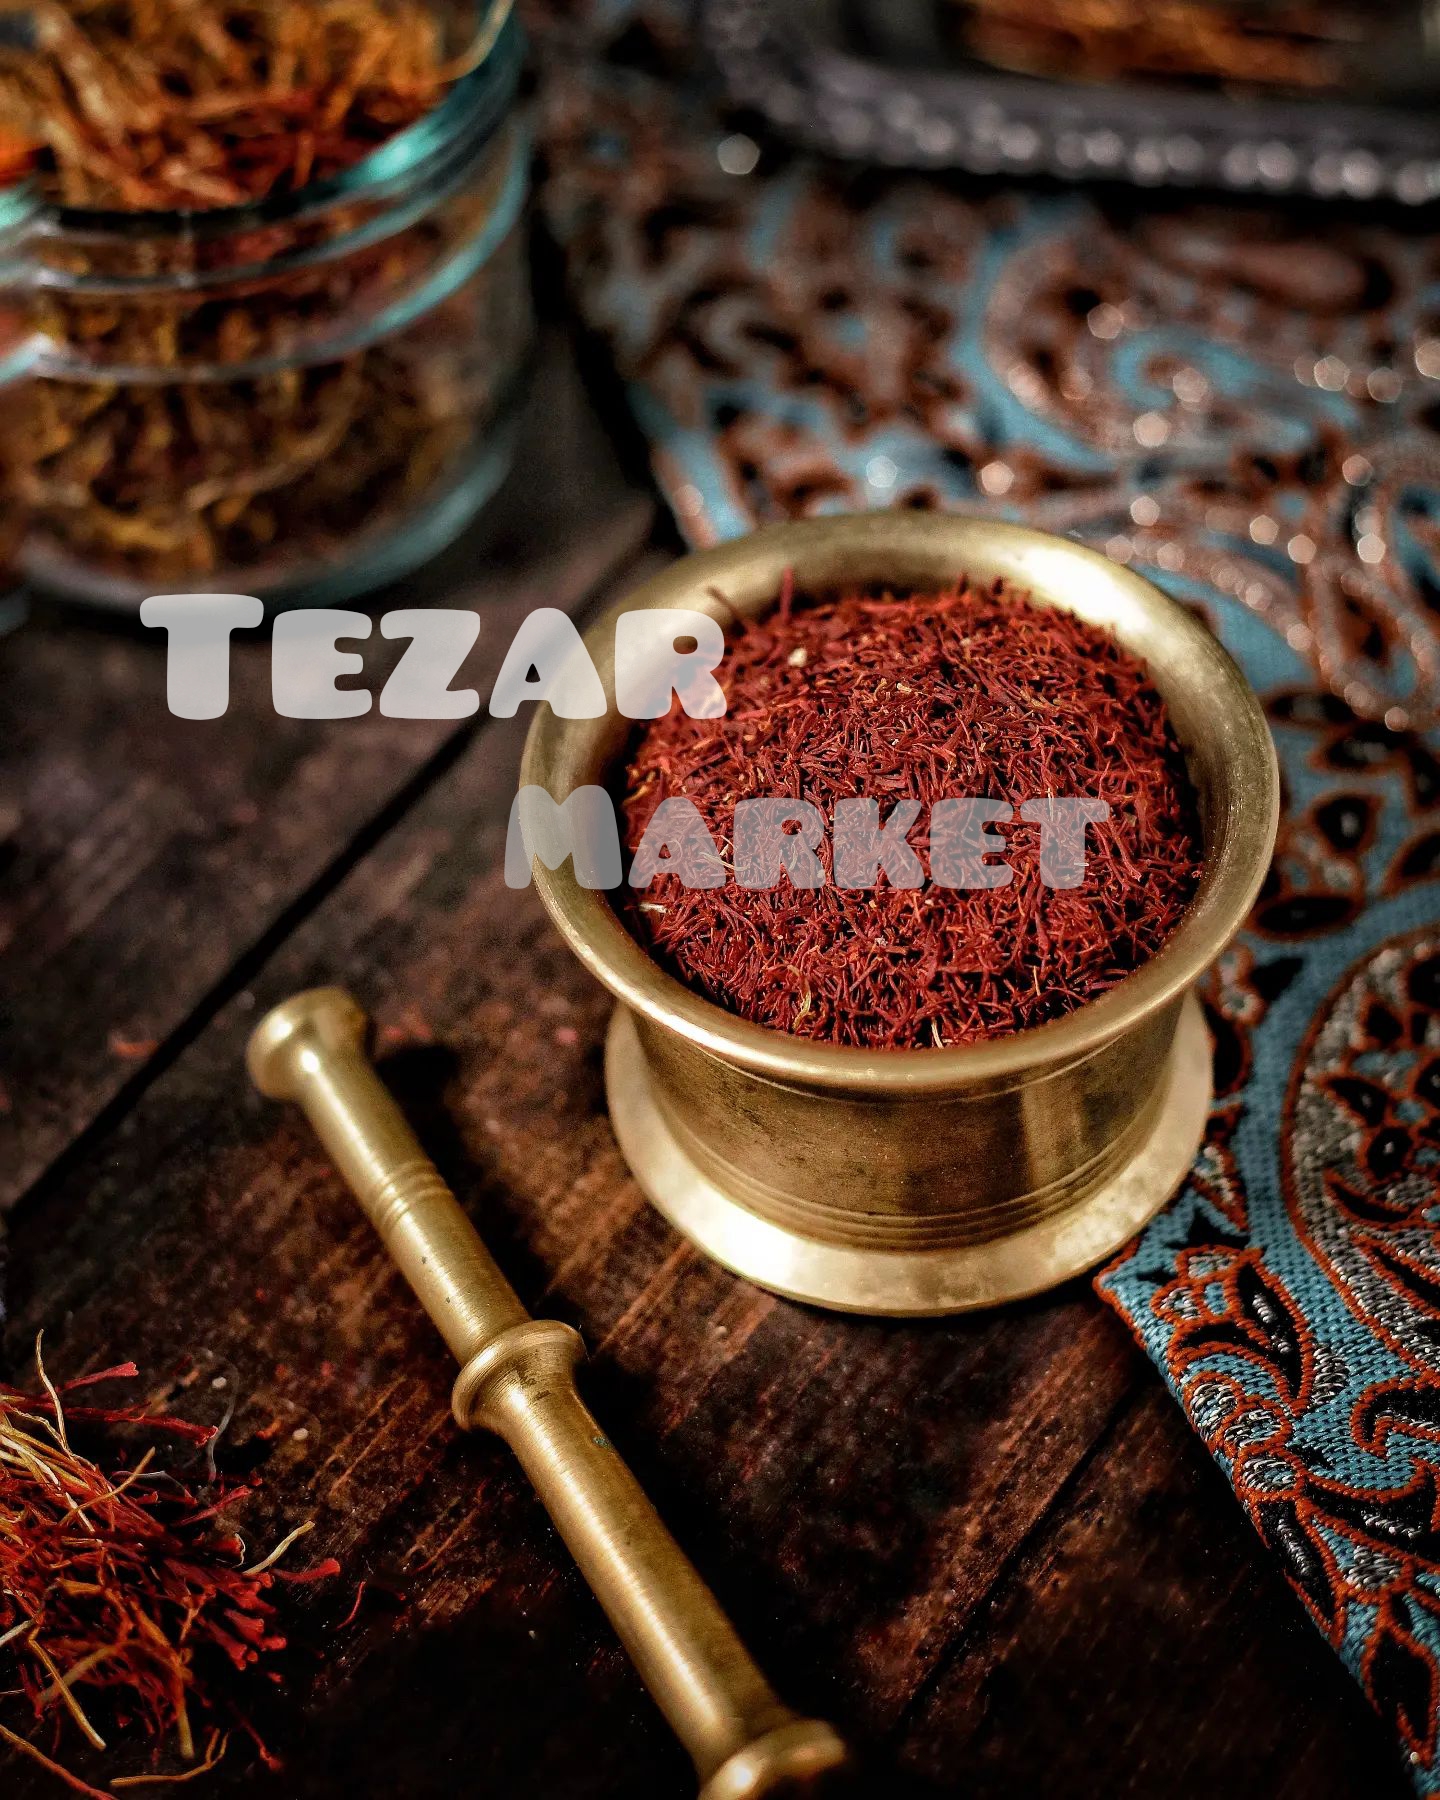 Iranian wholesale saffron contains less safranal